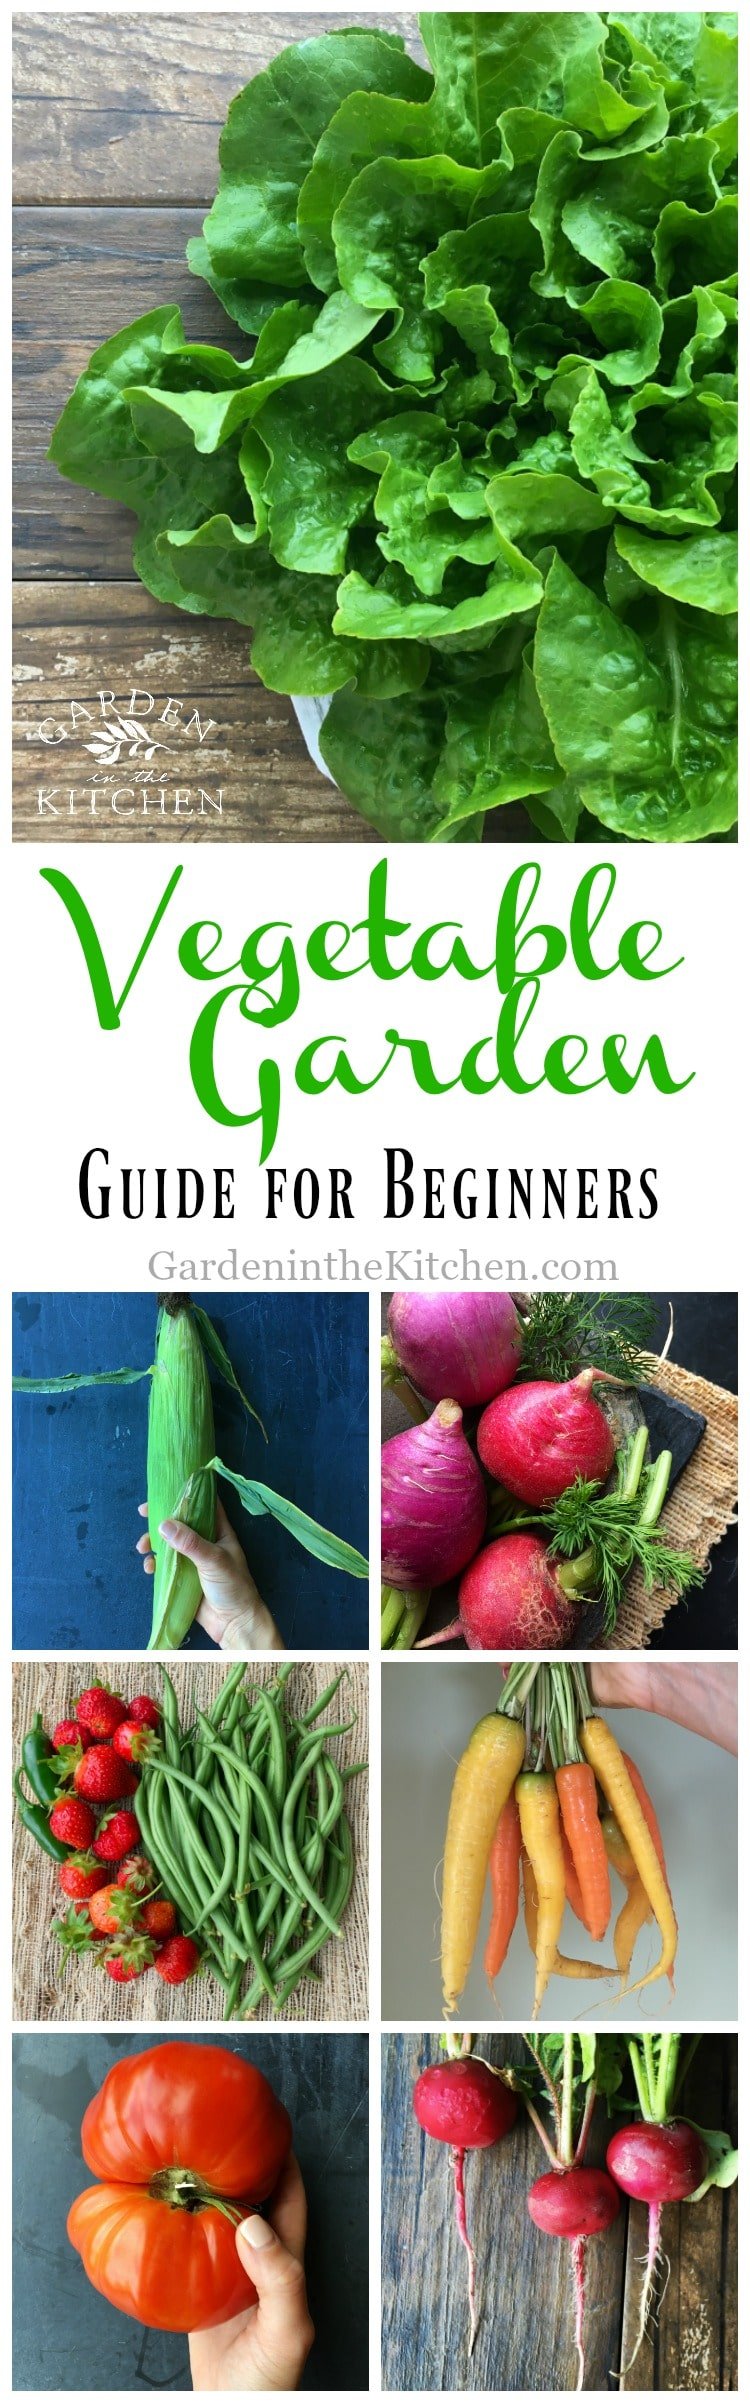 Vegetable Garde Guide for Beginners